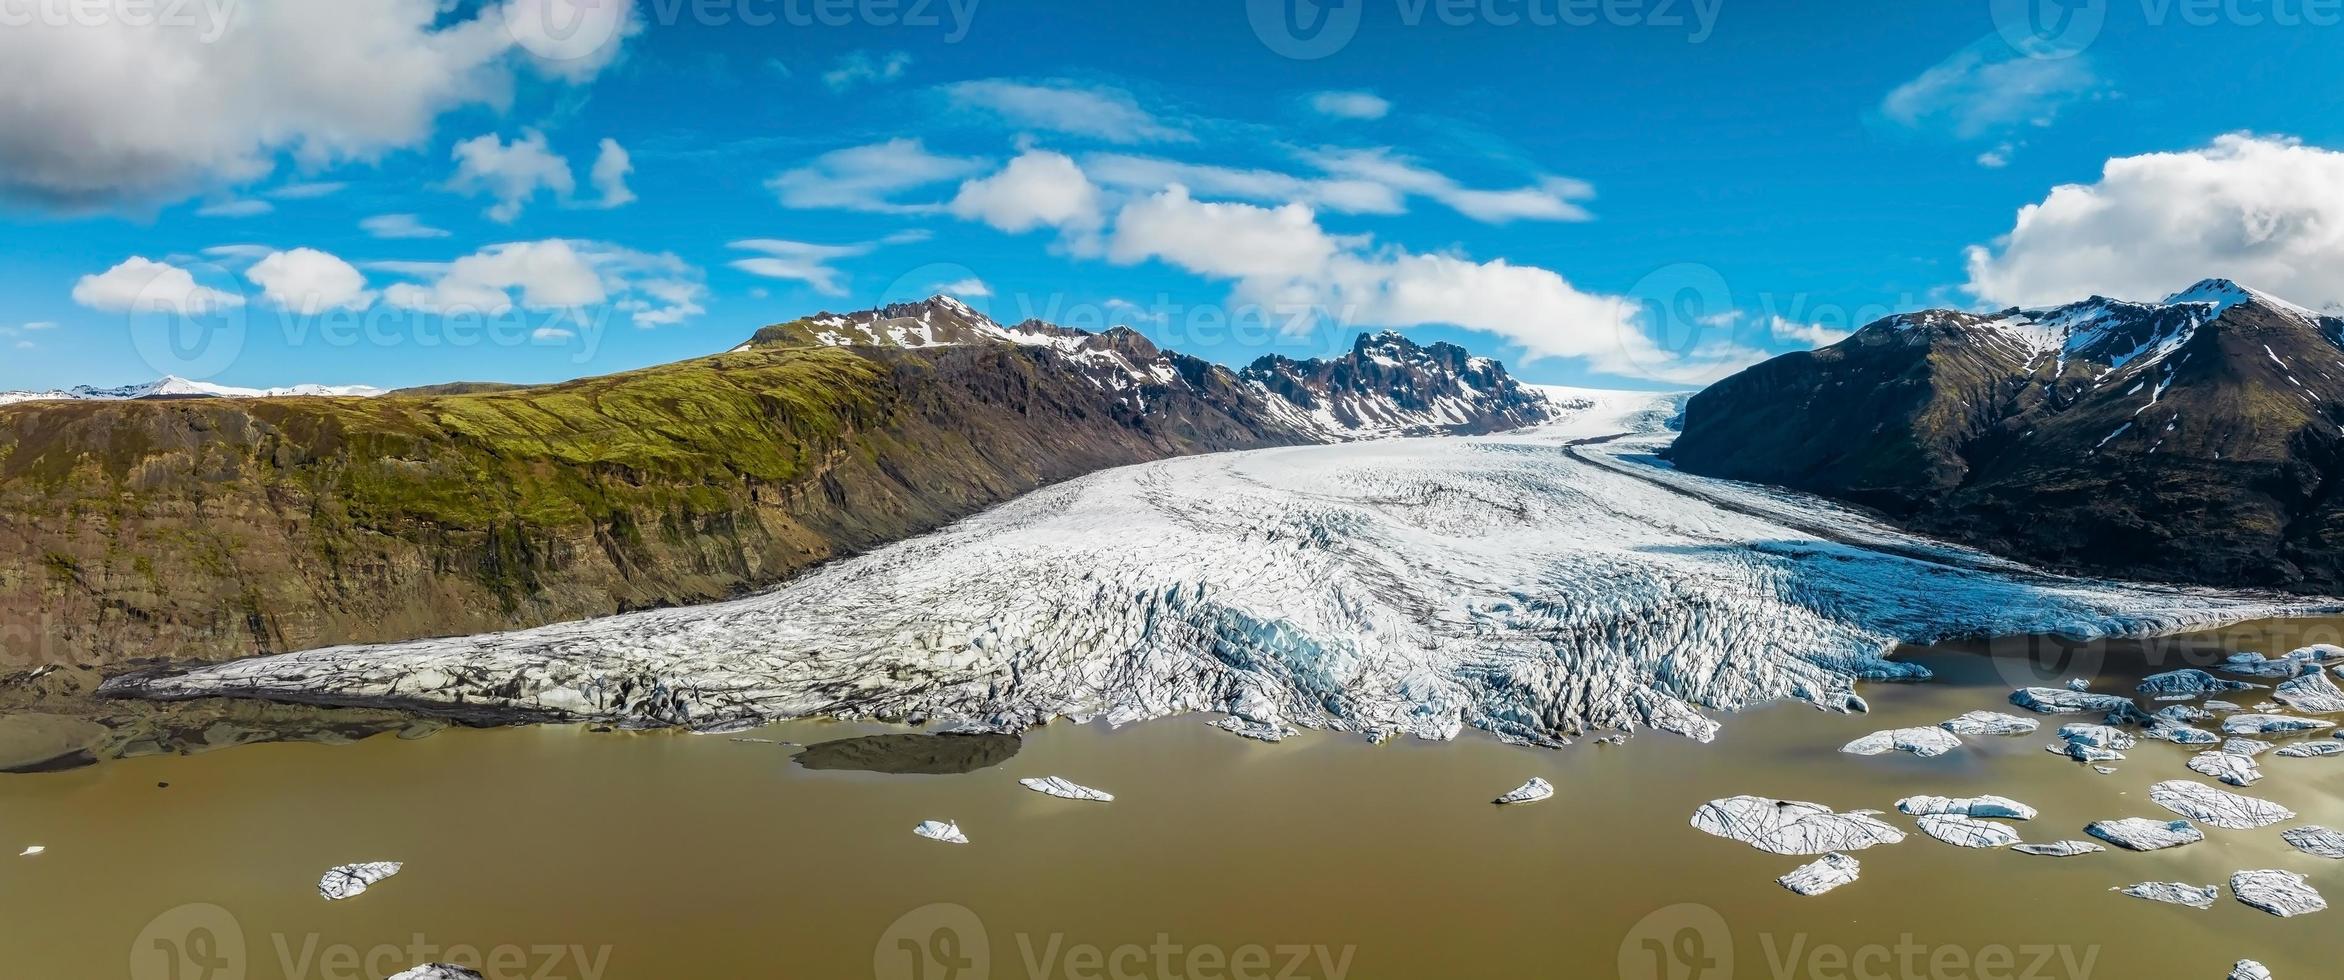 vue panoramique aérienne du glacier de skaftafell, islande photo